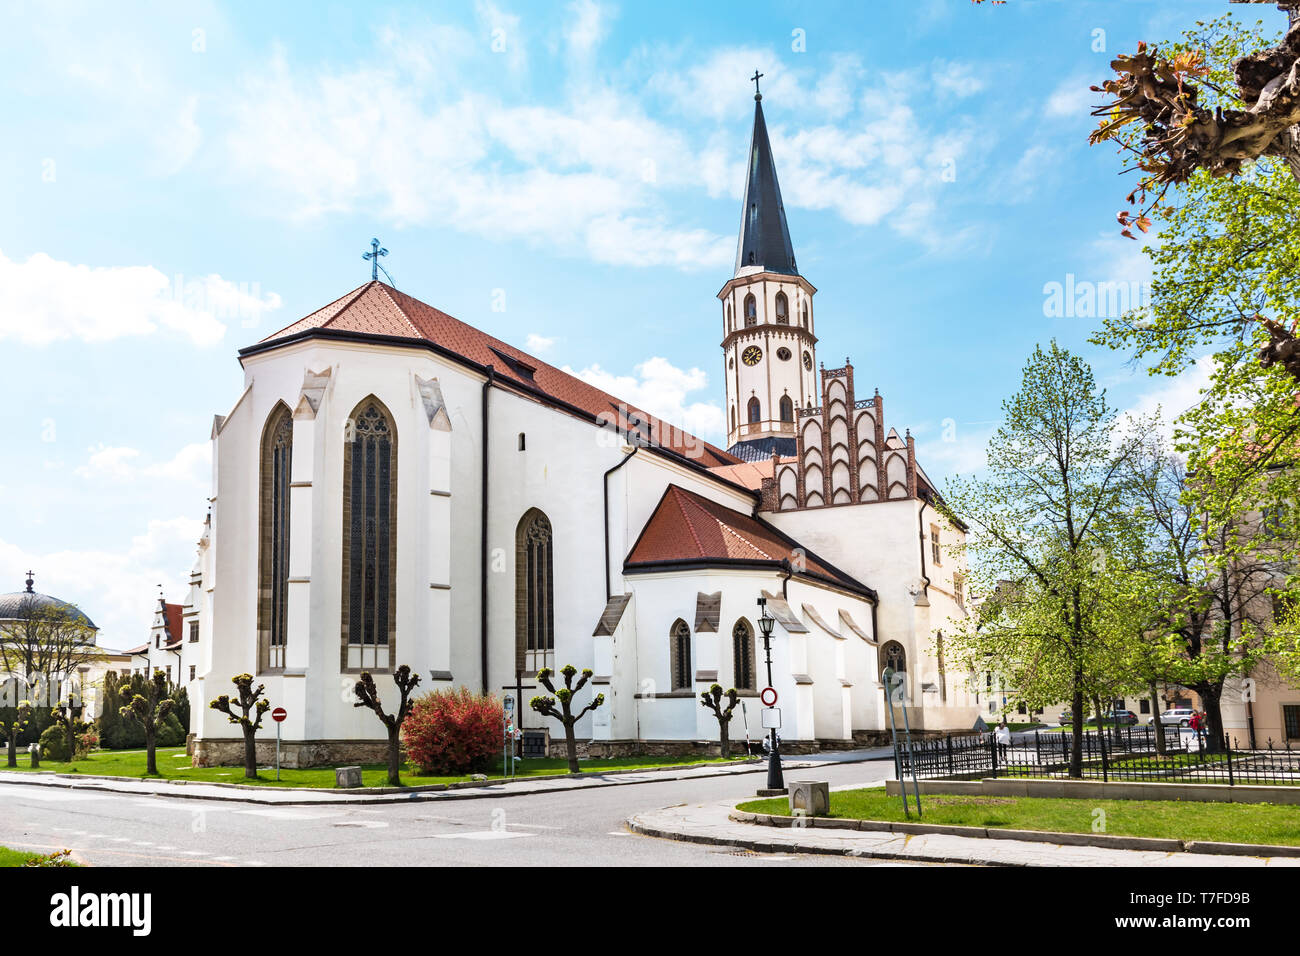 Basilique de St Jacques sur Maître Paul's Square dans la vieille ville de l'UNESCO - Levoca (Slovaquie) Banque D'Images